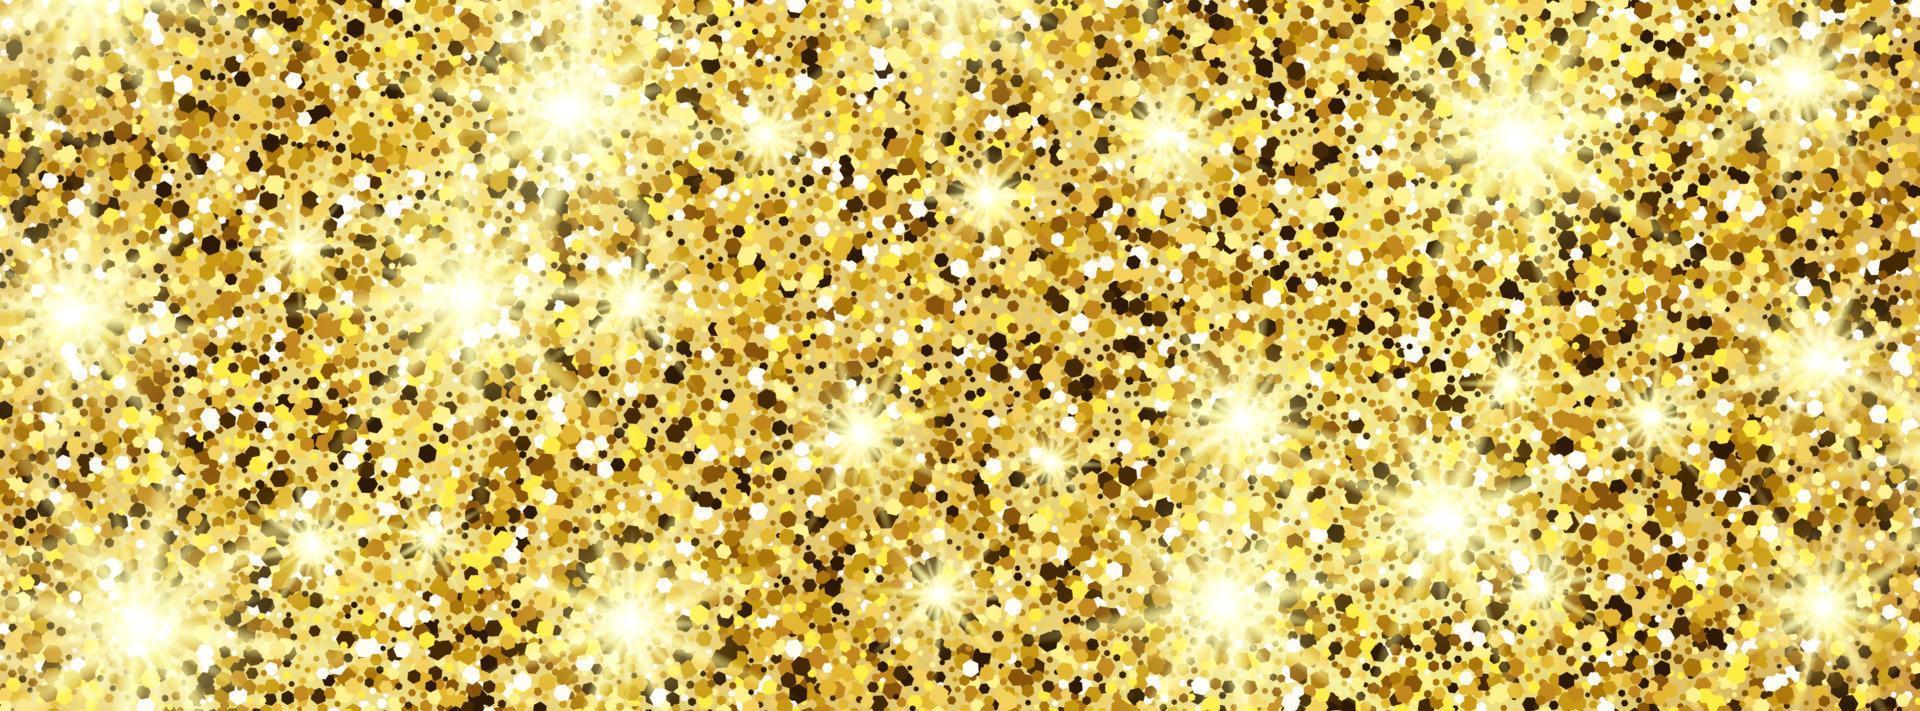 fundo brilhante dourado com brilhos dourados e efeito de glitter. projeto de bandeira. espaço vazio para o seu texto. ilustração vetorial vetor